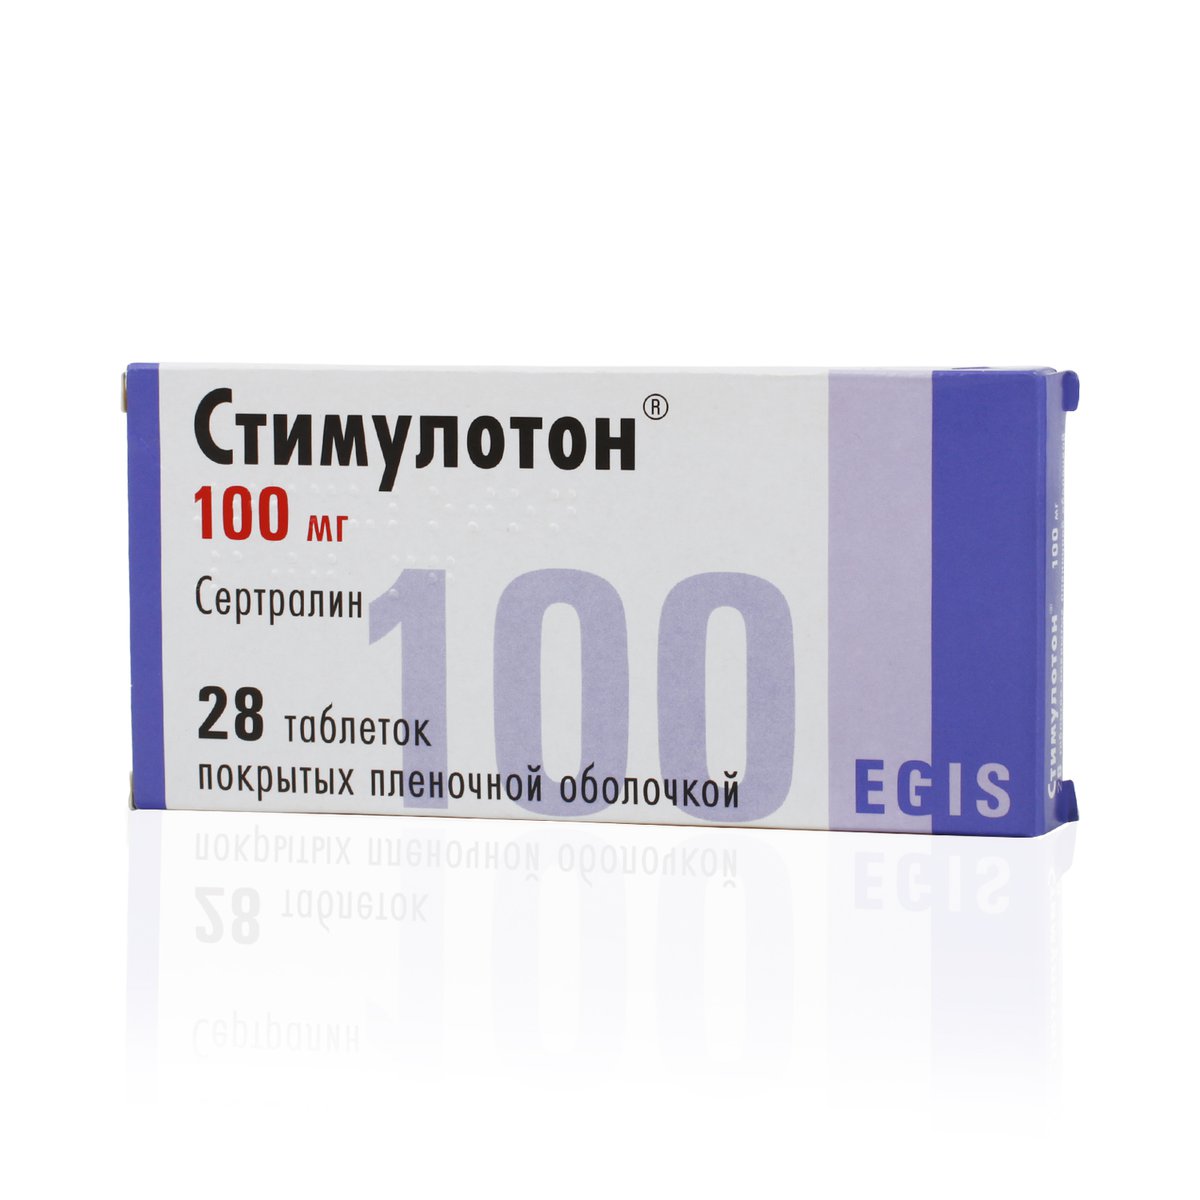 Стимулотон (таблетки, 28 шт, 100 мг) - цена,  онлайн  .